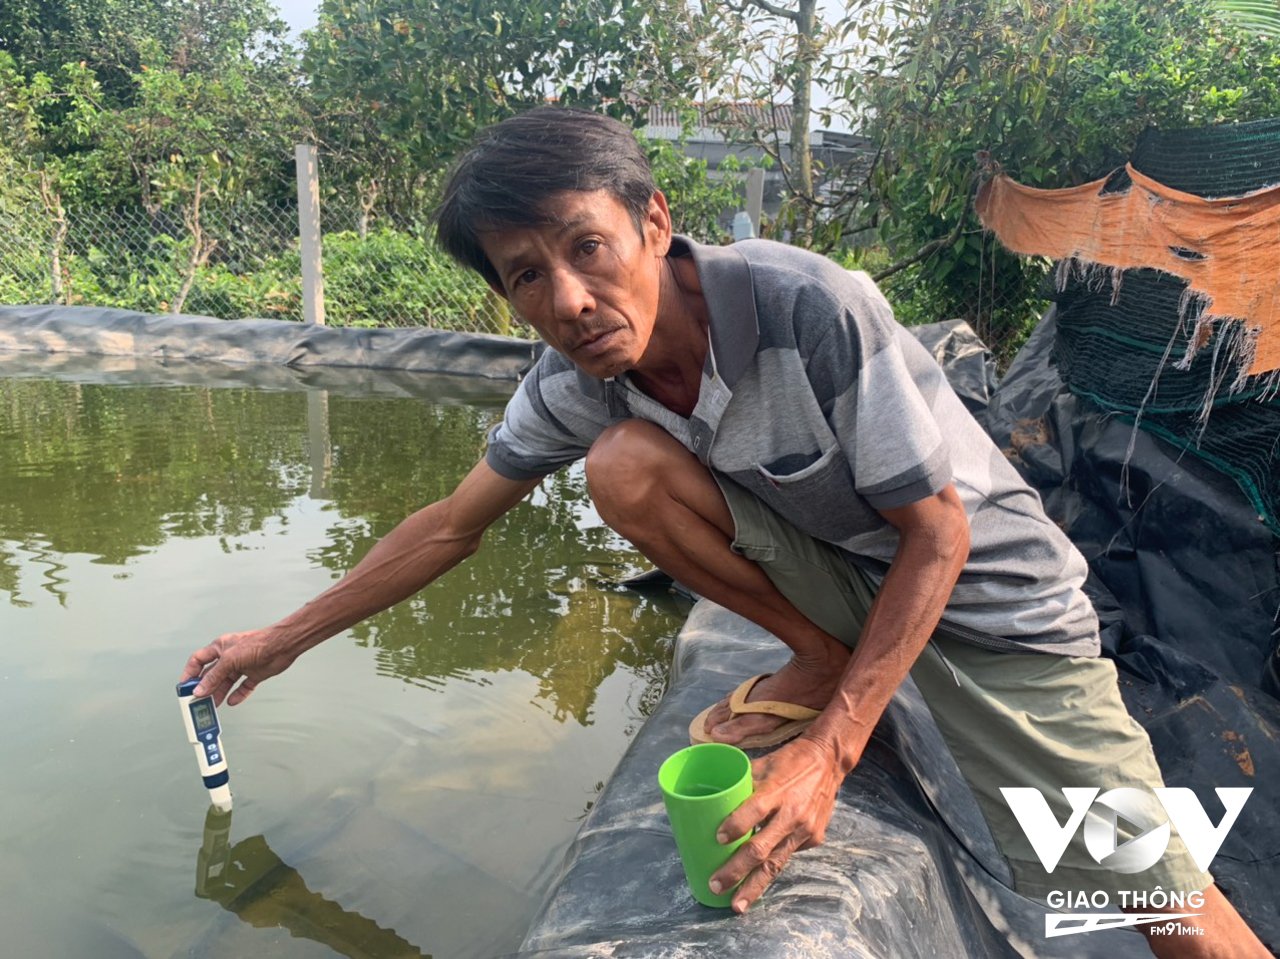 Ông Nguyễn Văn Chương, Chợ Lách, Bến Tre thường xuyên kiểm tra độ mặn của nước trước khi tưới sầu riêng